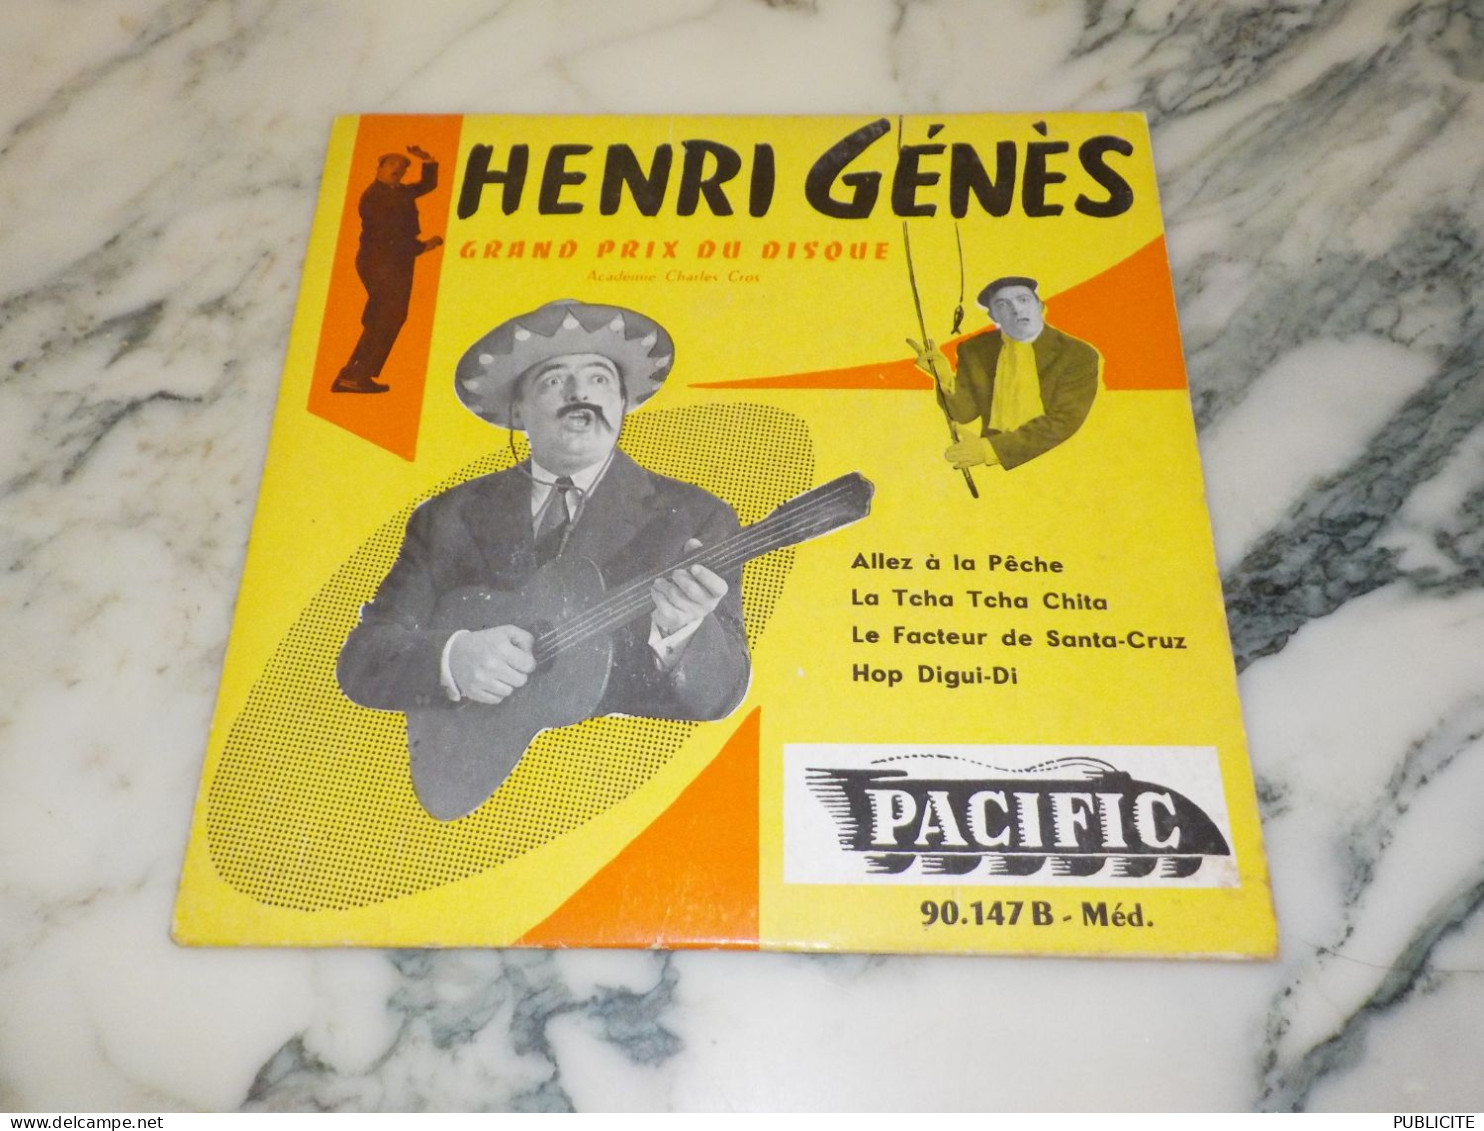 45 TOURS GRAND PRIX DU DISQUE HENRI GENES 1955 - Comiques, Cabaret